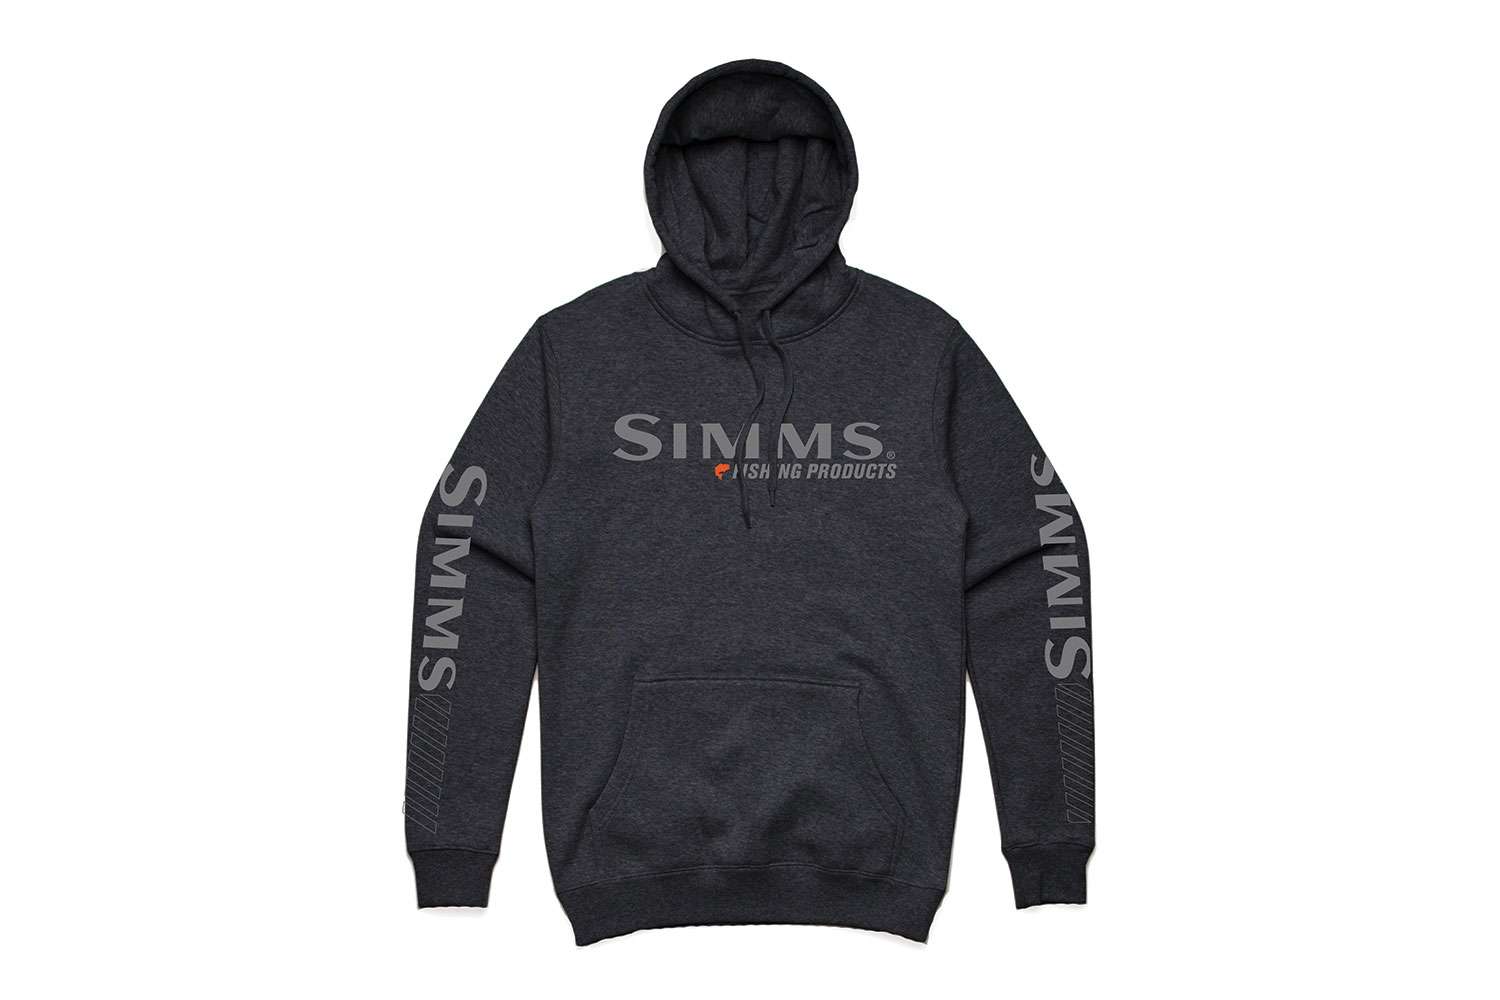 Simms Bass Logo Hoody, $69.95